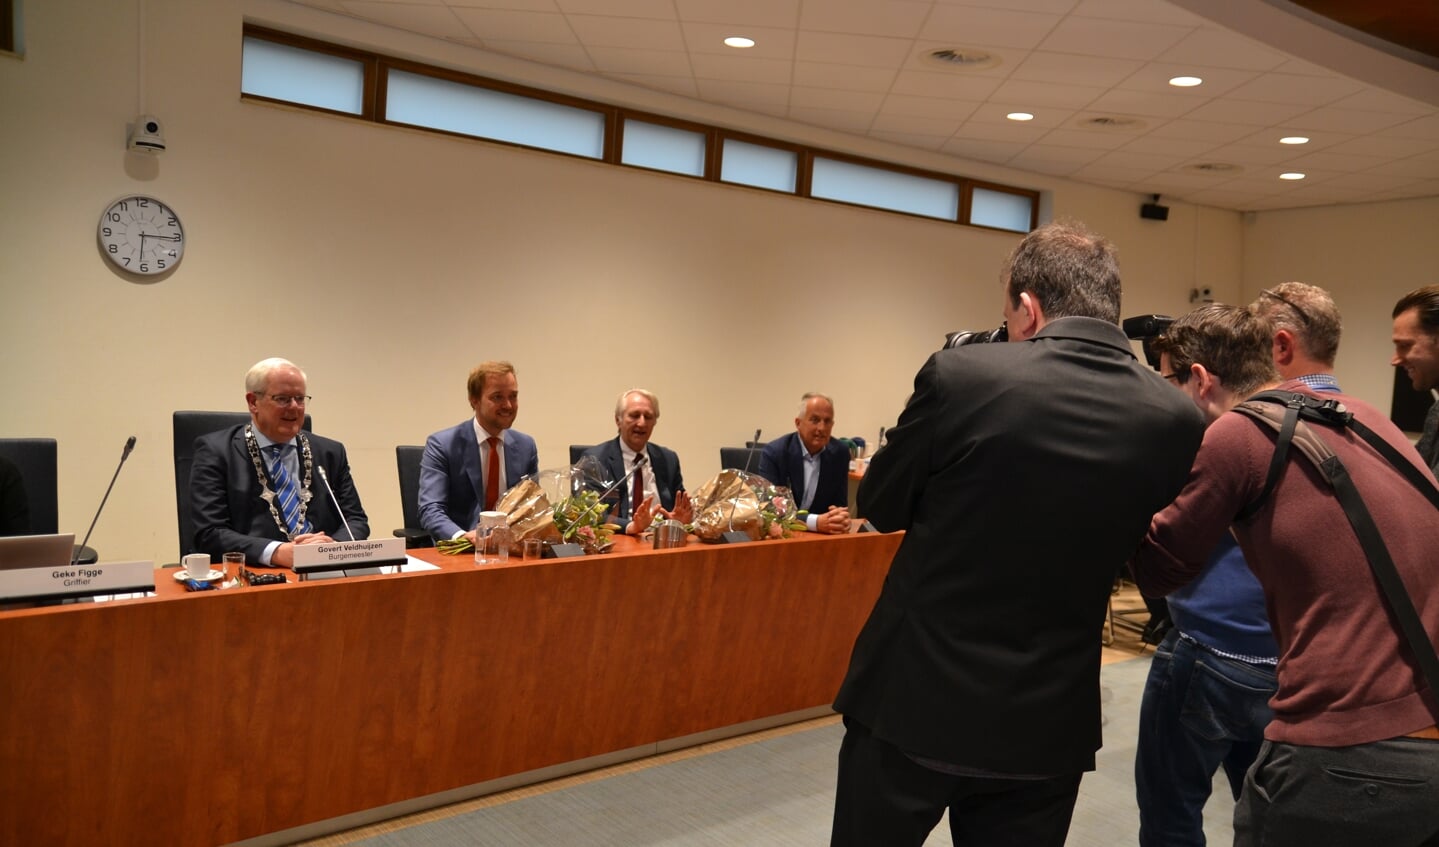 De wethouders Vermaat en Van der Linden hebben plaatsgenomen naast de burgemeester.